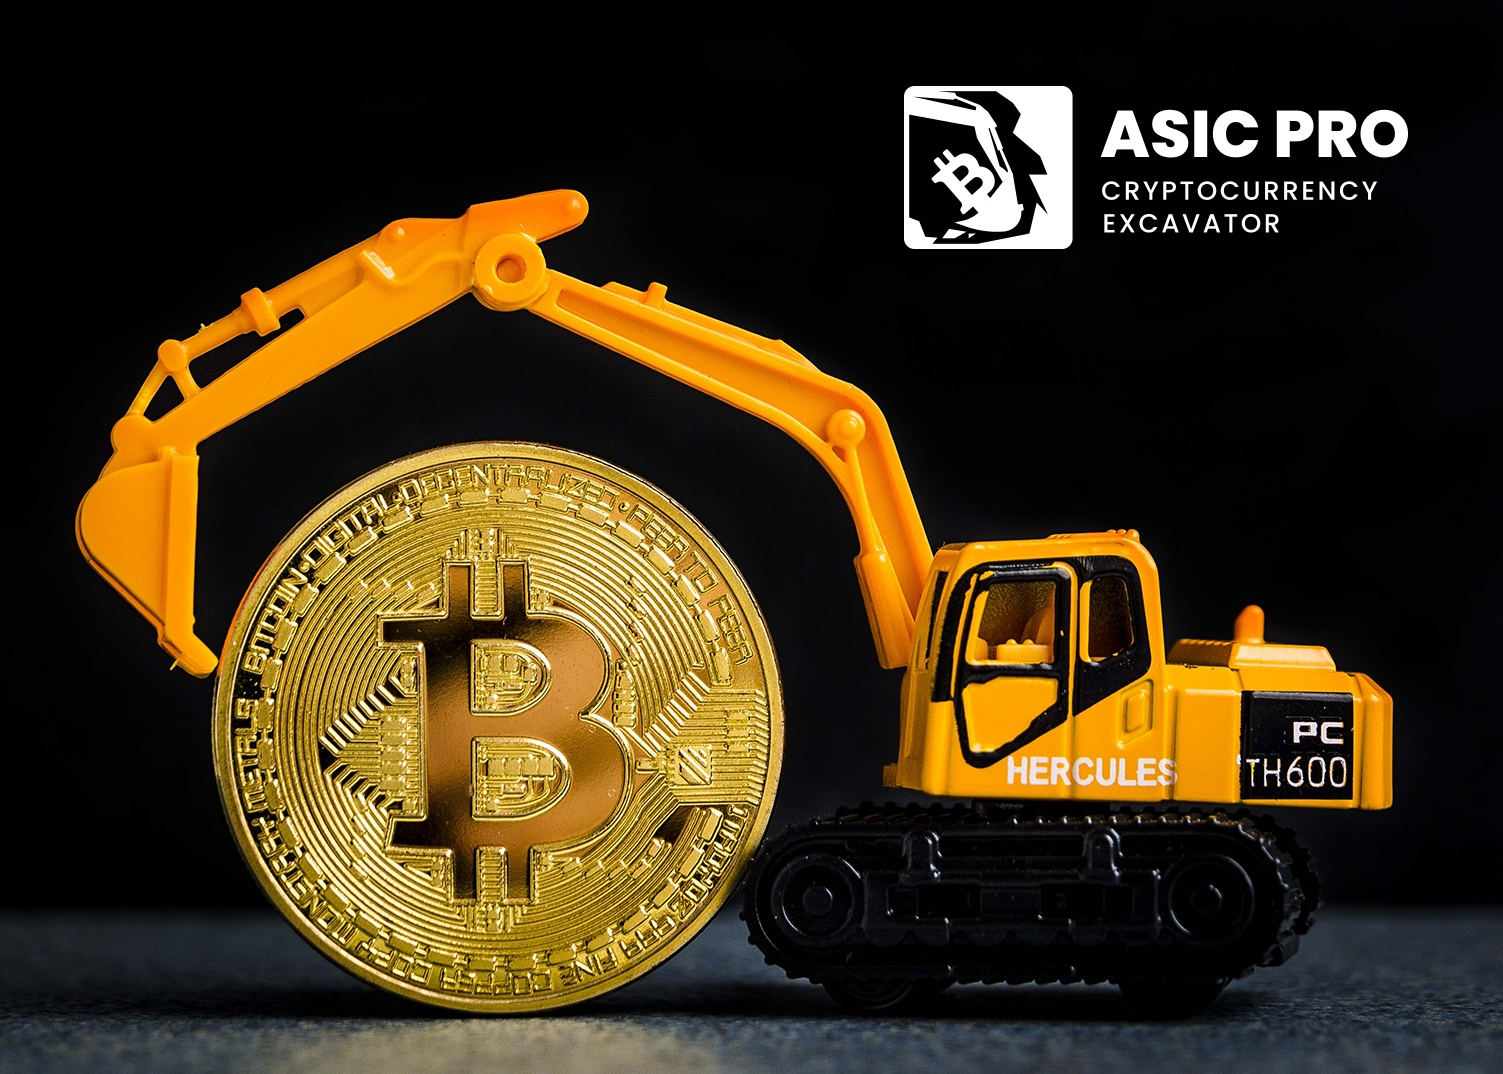 Asic Pro - the excavator among crypto-excavators